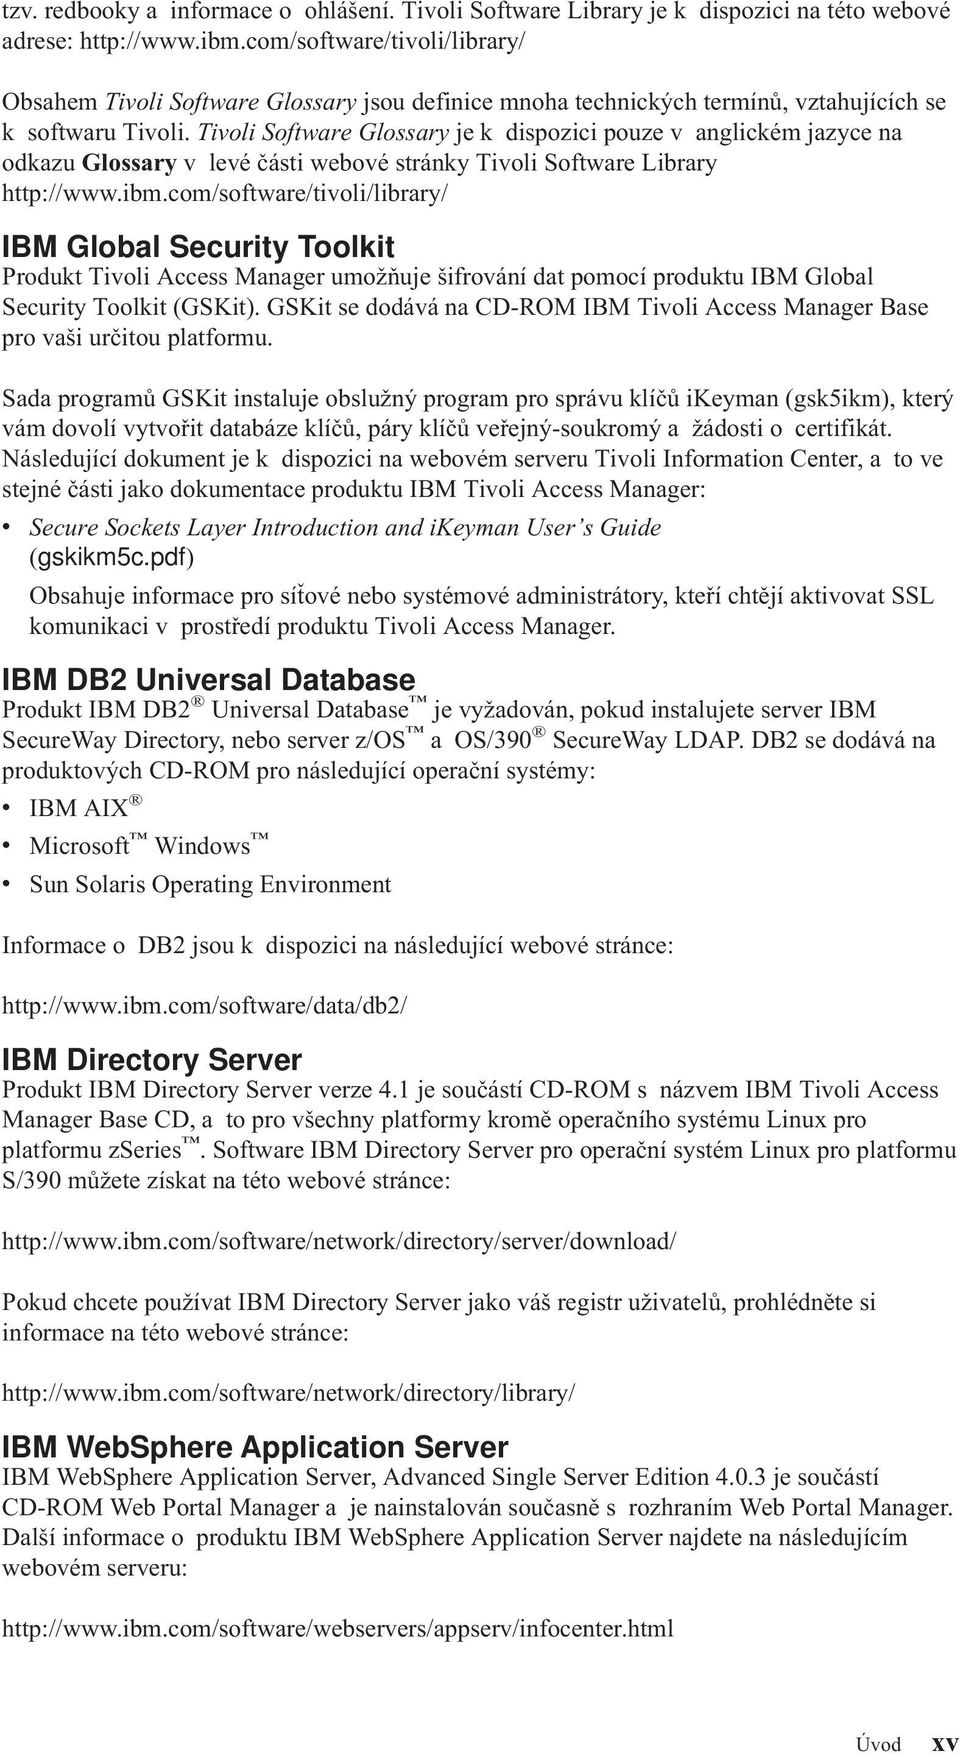 Tivoli Software Glossary je k dispozici pouze v anglickém jazyce na odkazu Glossary v levé části webové stránky Tivoli Software Library http://www.ibm.